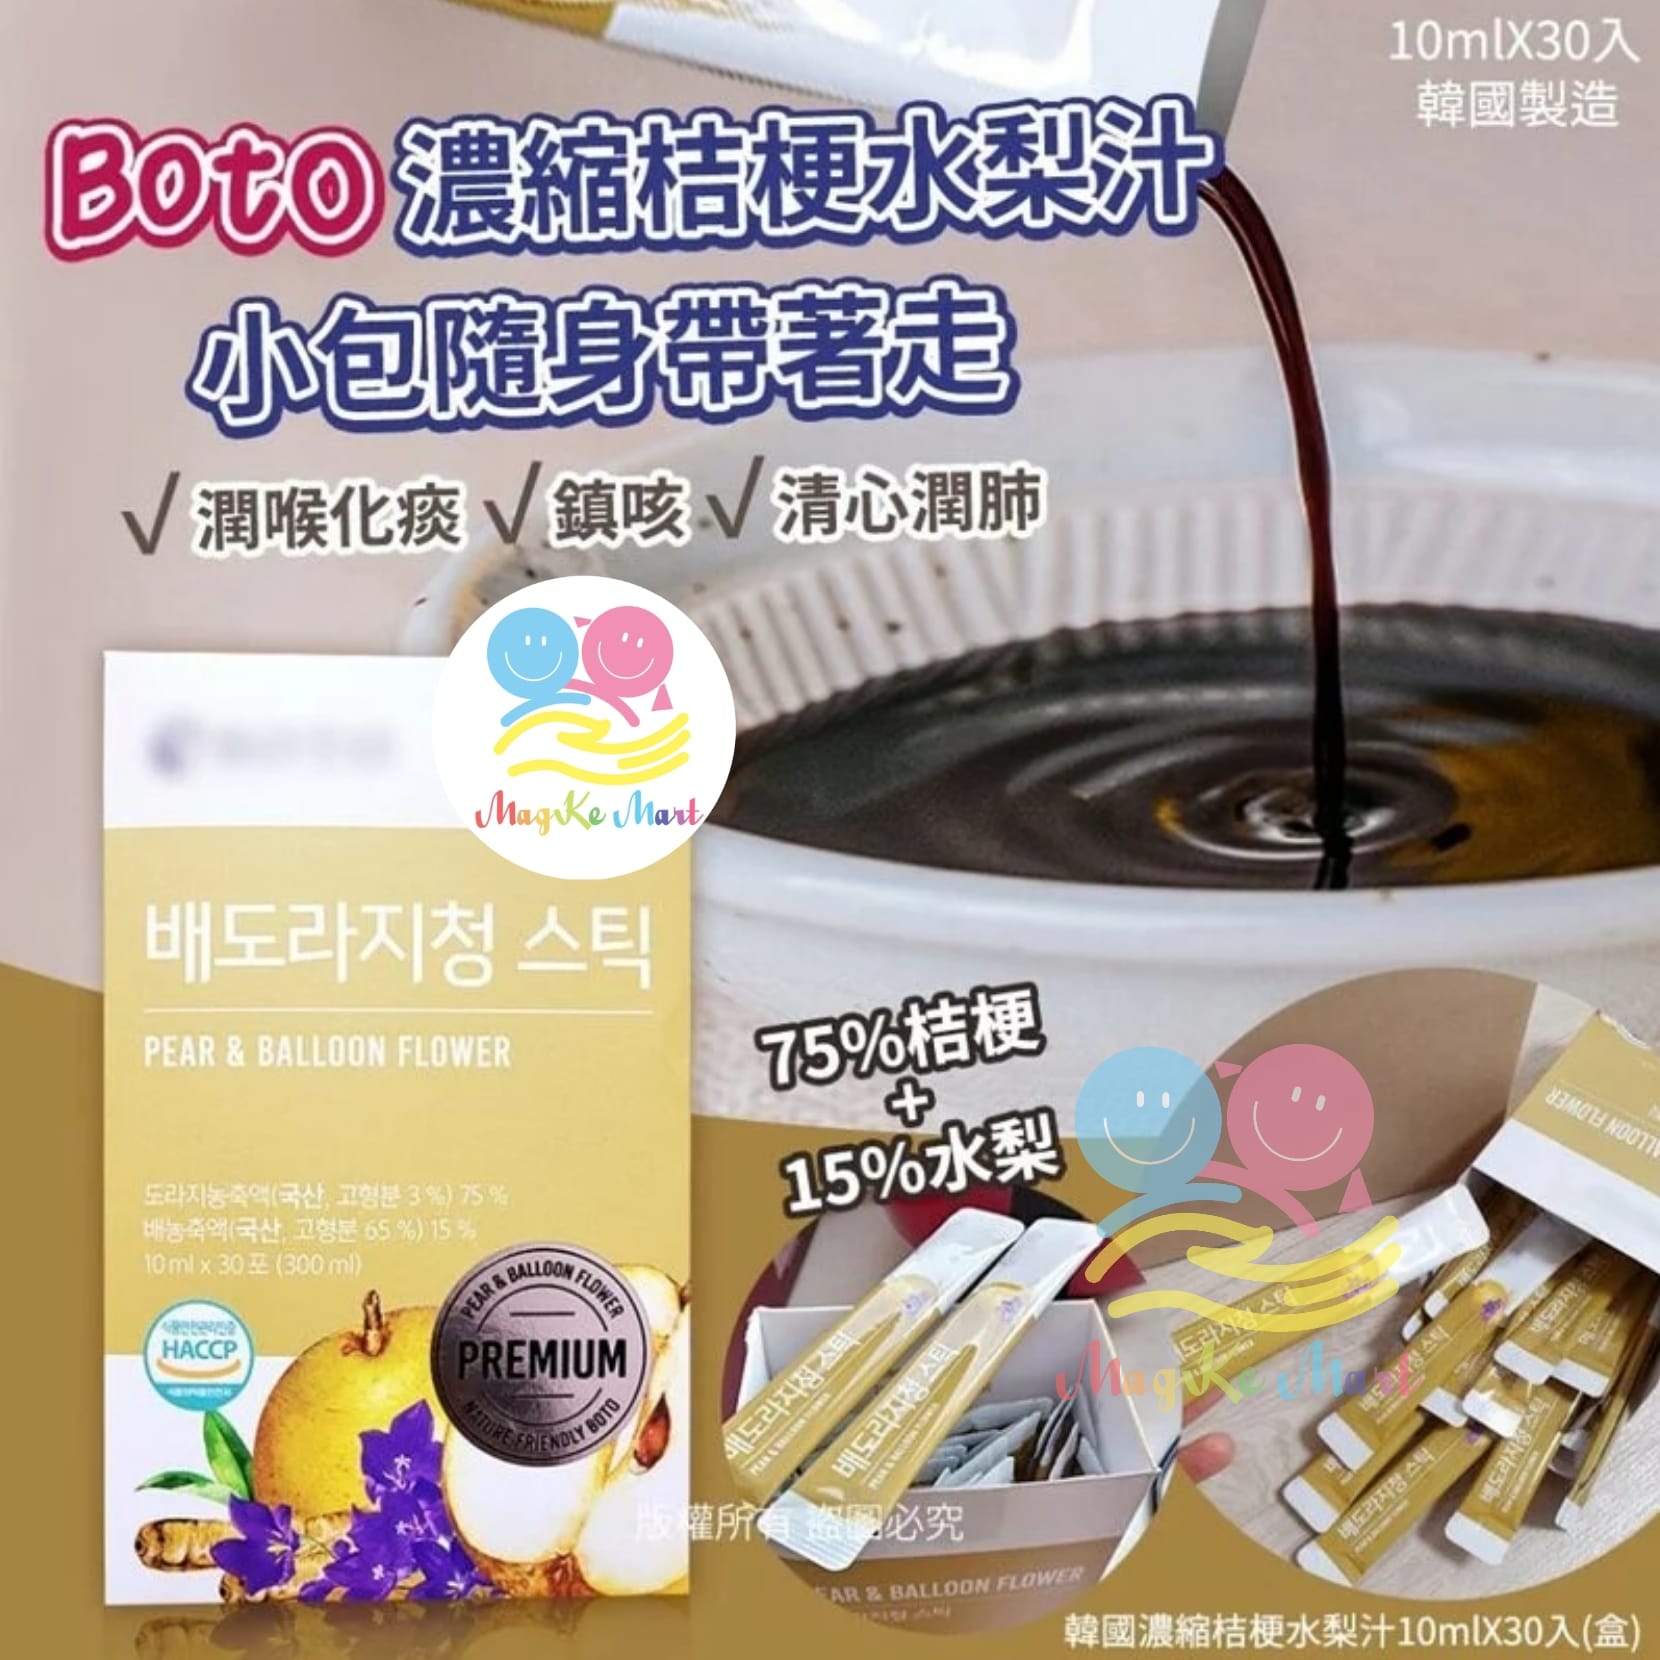 韓國 BOTO 濃縮桔梗水梨汁 10ml (1盒30入)